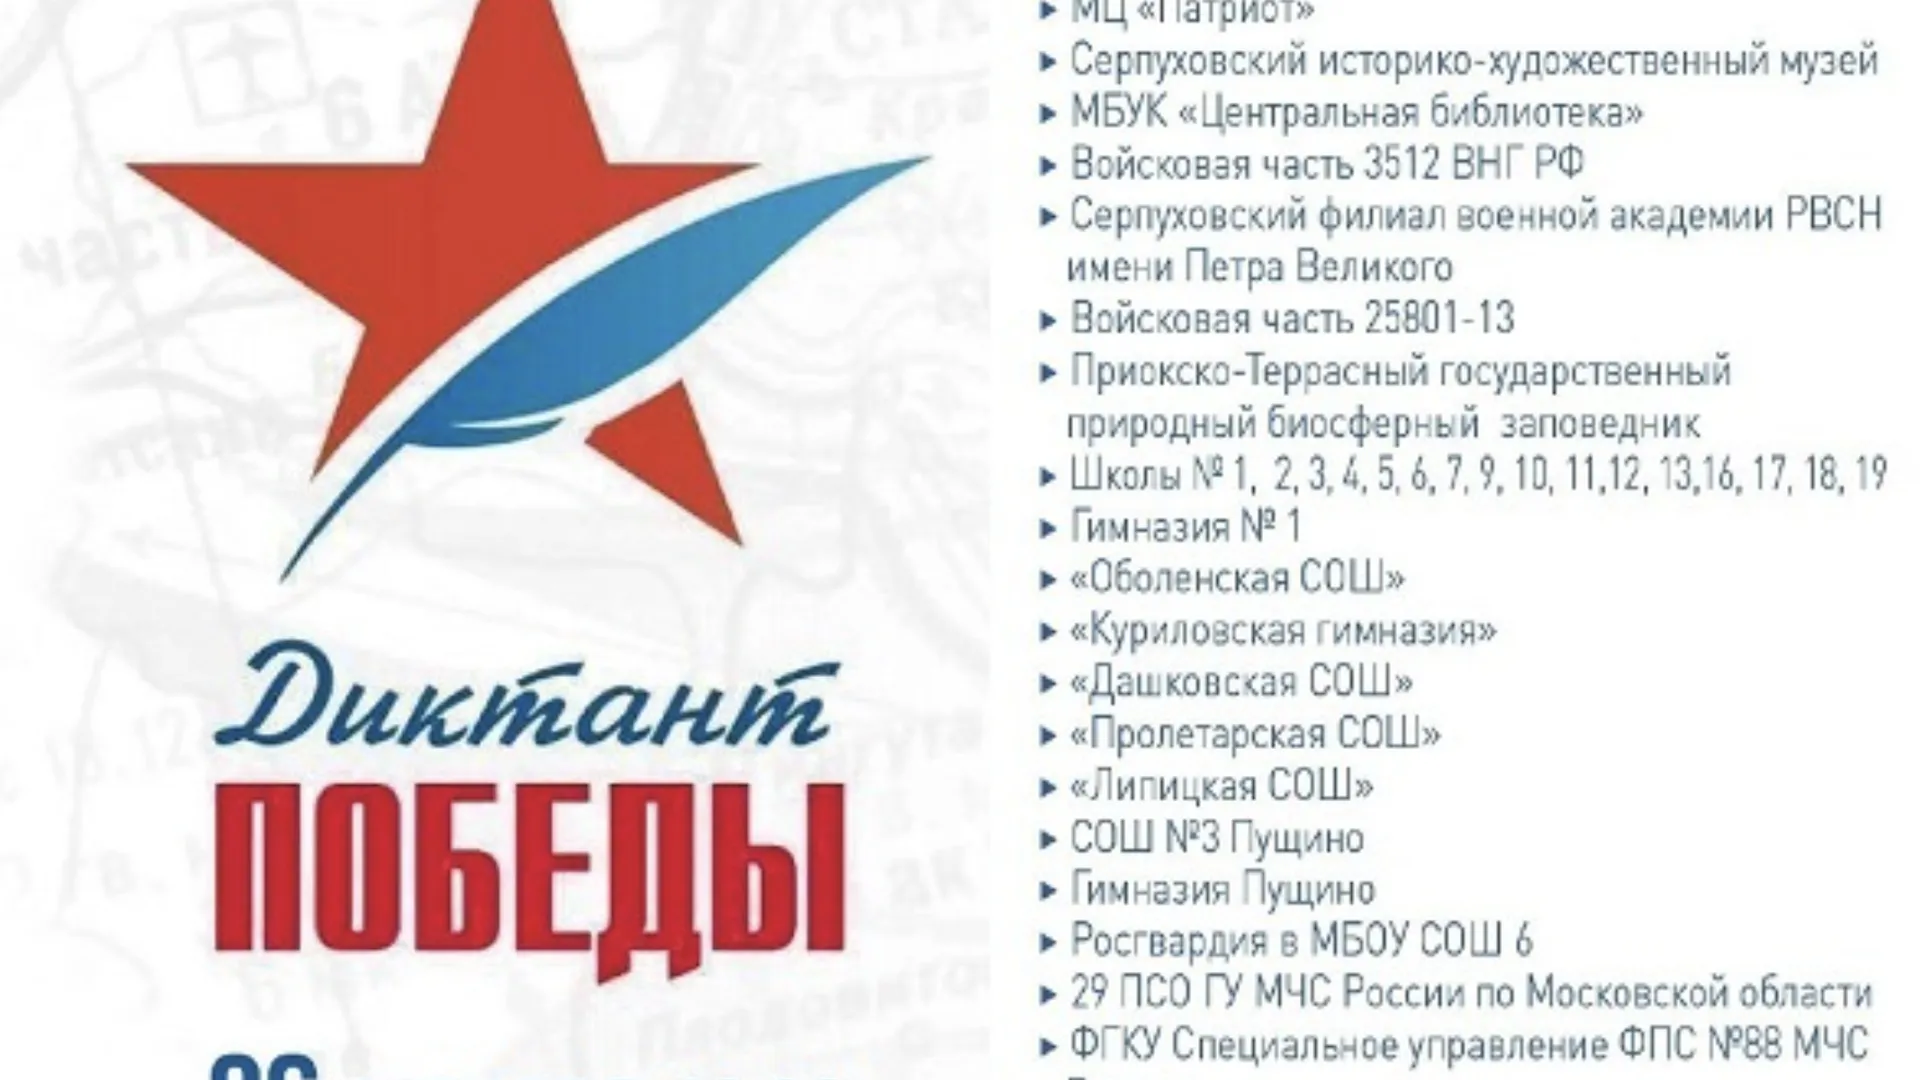 В Серпухове 26 апреля «Диктант Победы» напишут на 36 площадках